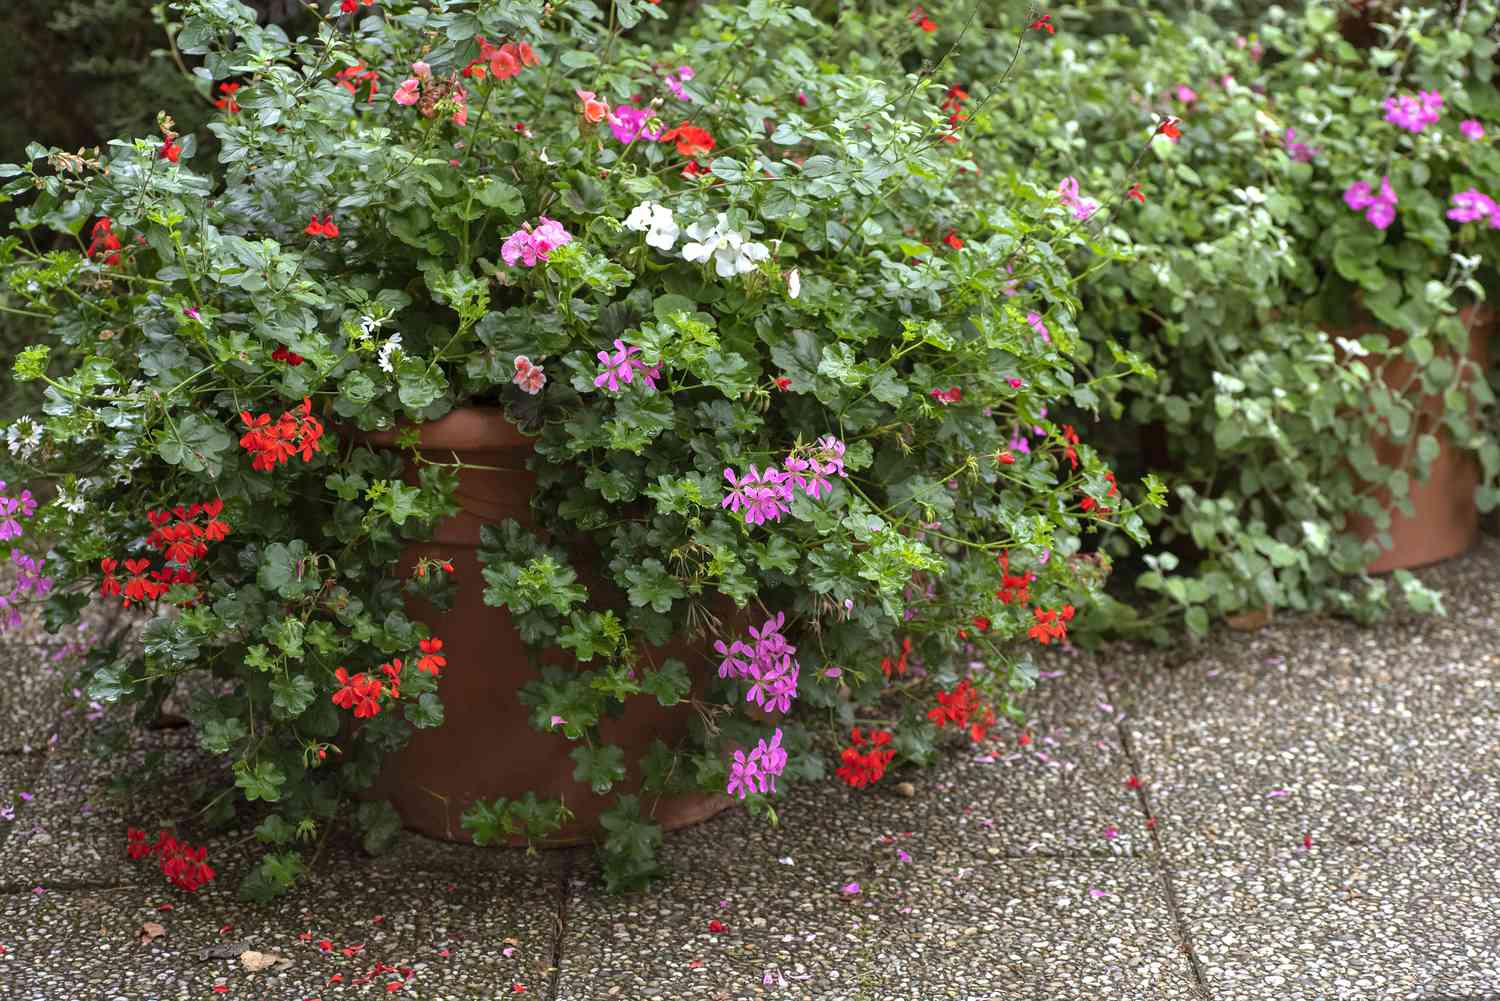 Plantas de gerânio Ivy penduradas em recipientes com pequenas flores rosas, vermelhas e brancas e folhas circulares